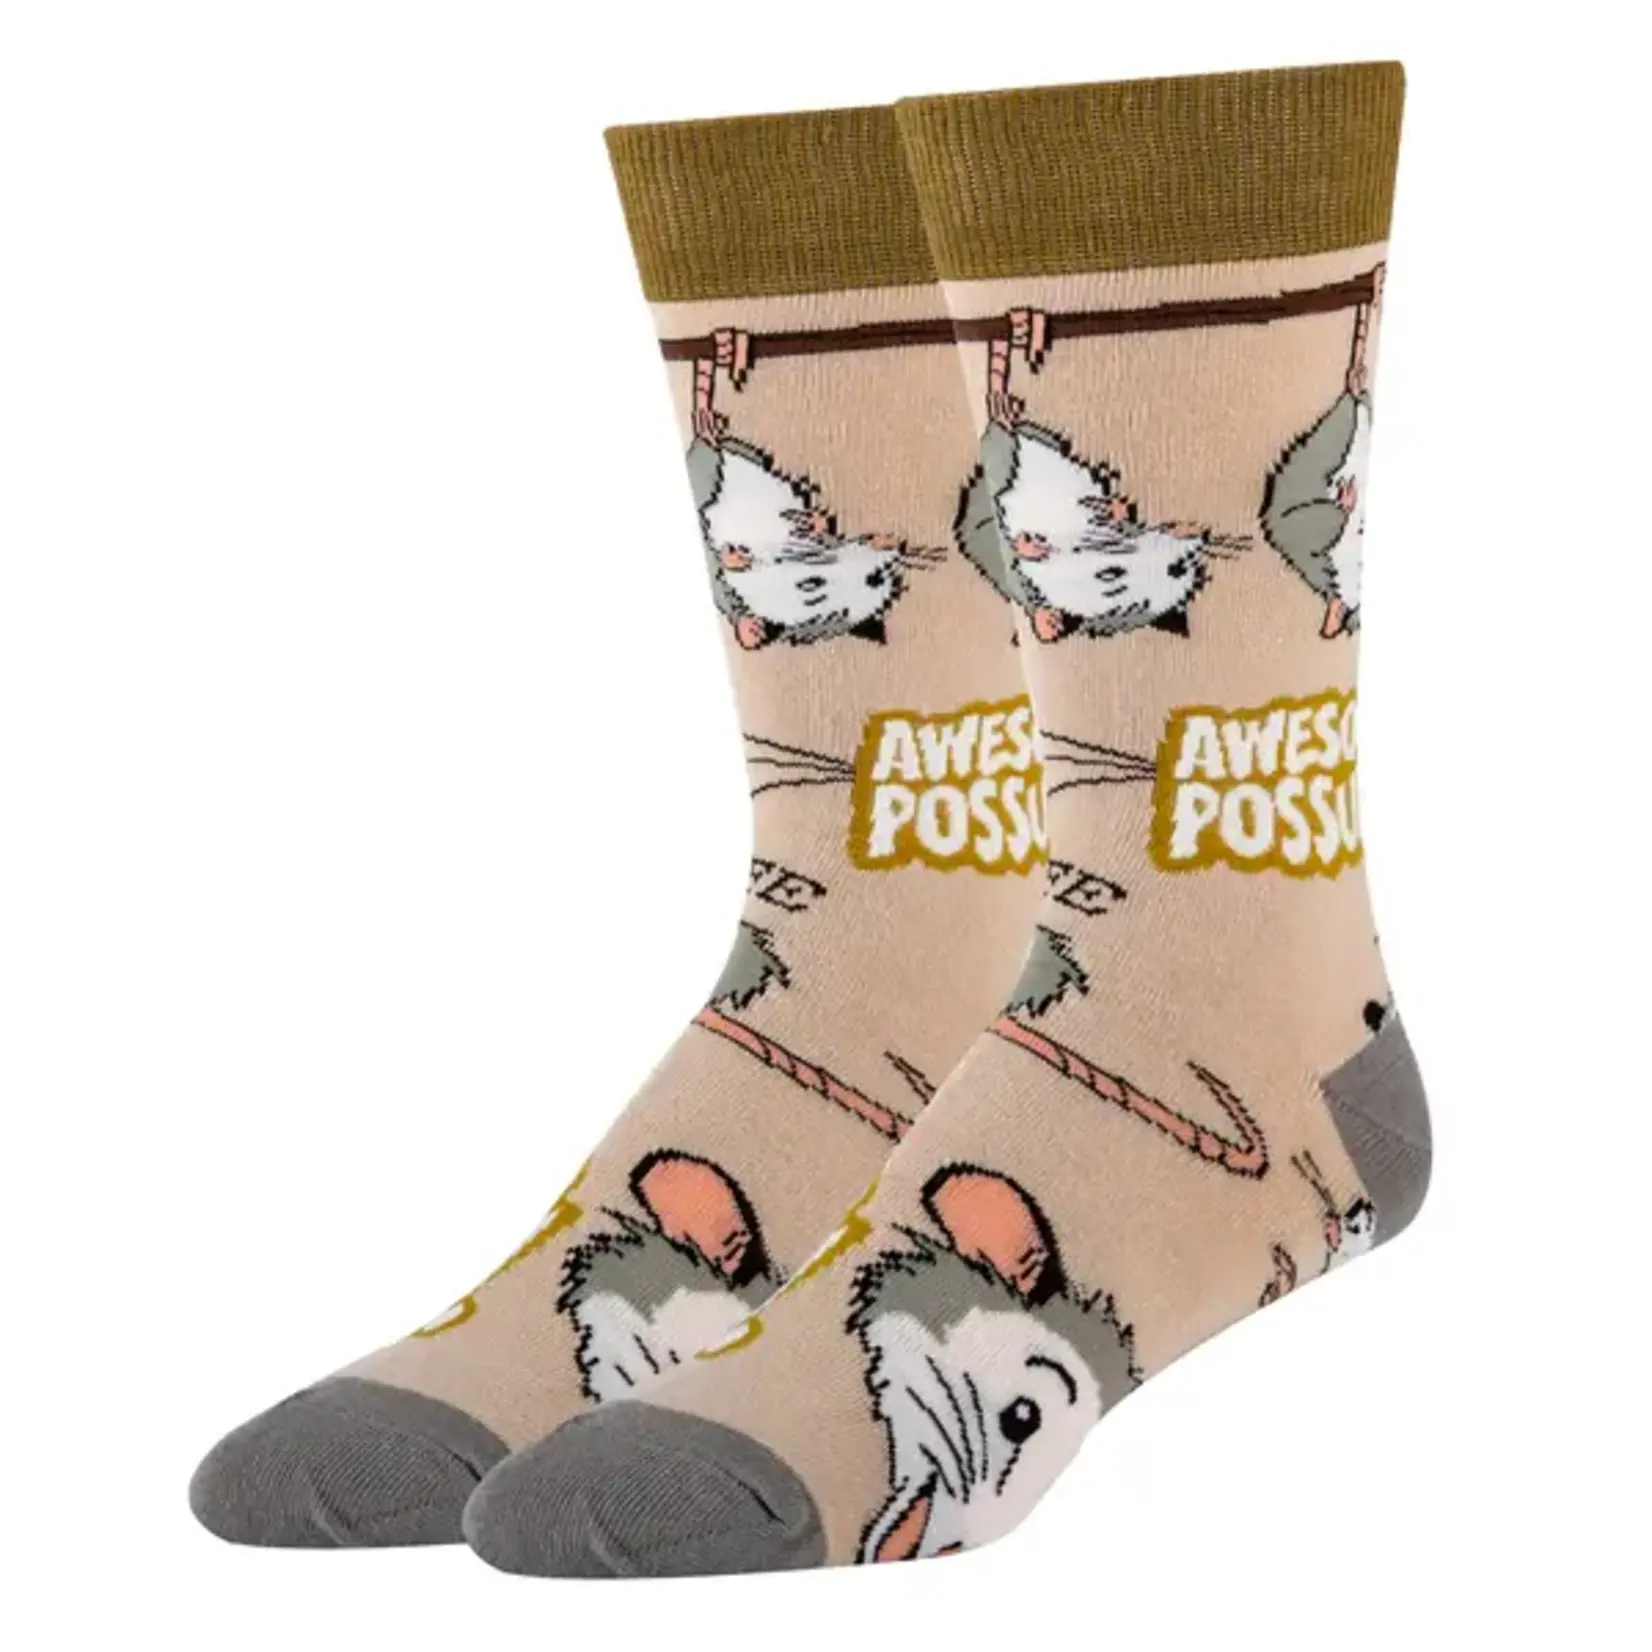 Socks (Mens) - Awesome Possum